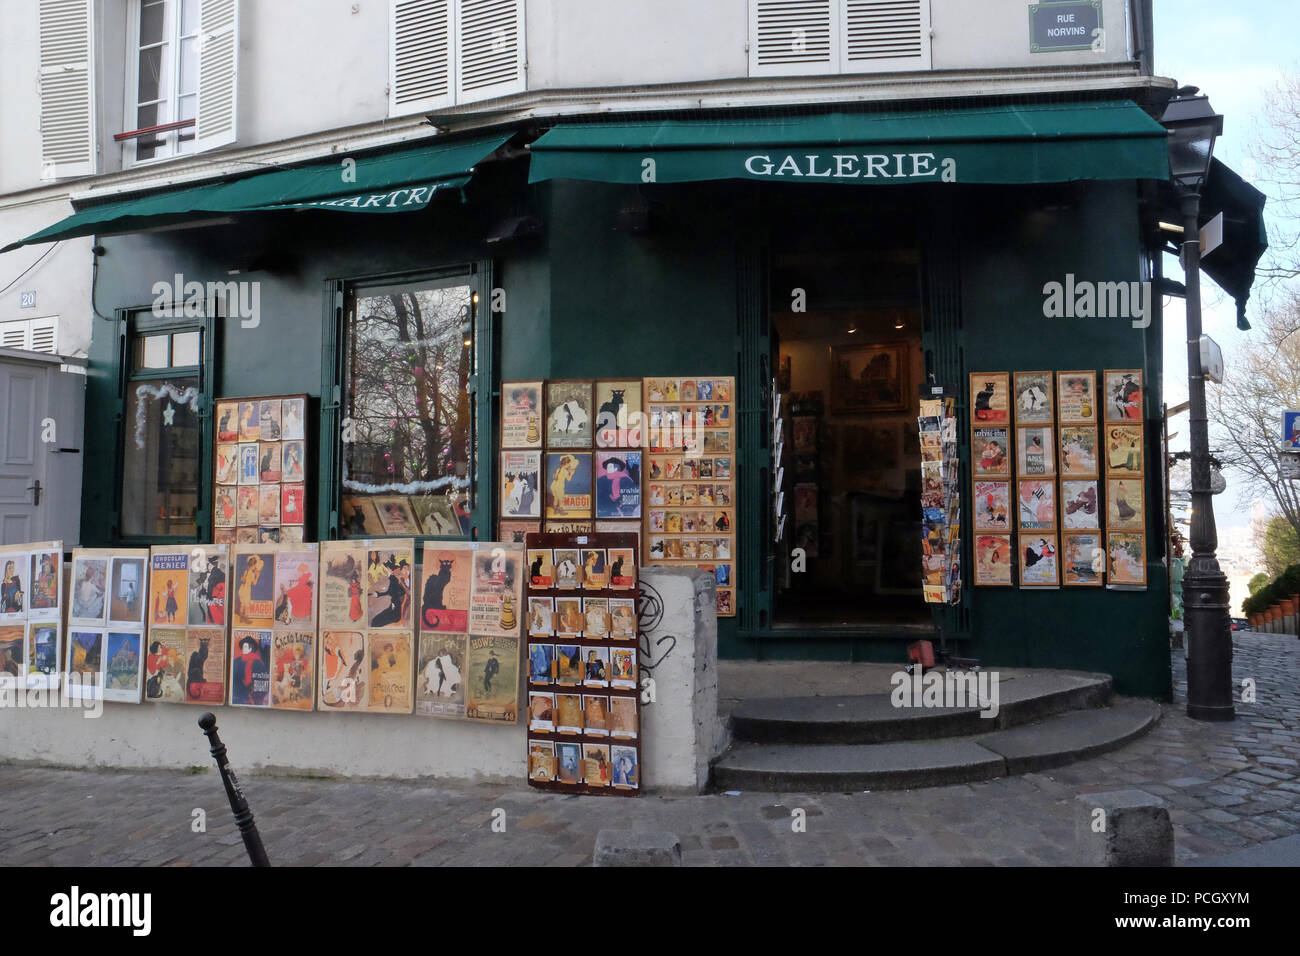 Alte Kunstdrucke zum Verkauf in Montmartre Galerie. Touristen sind auf  Gemälden dargestellt für den Verkauf in Paris, Frankreich Stockfotografie -  Alamy